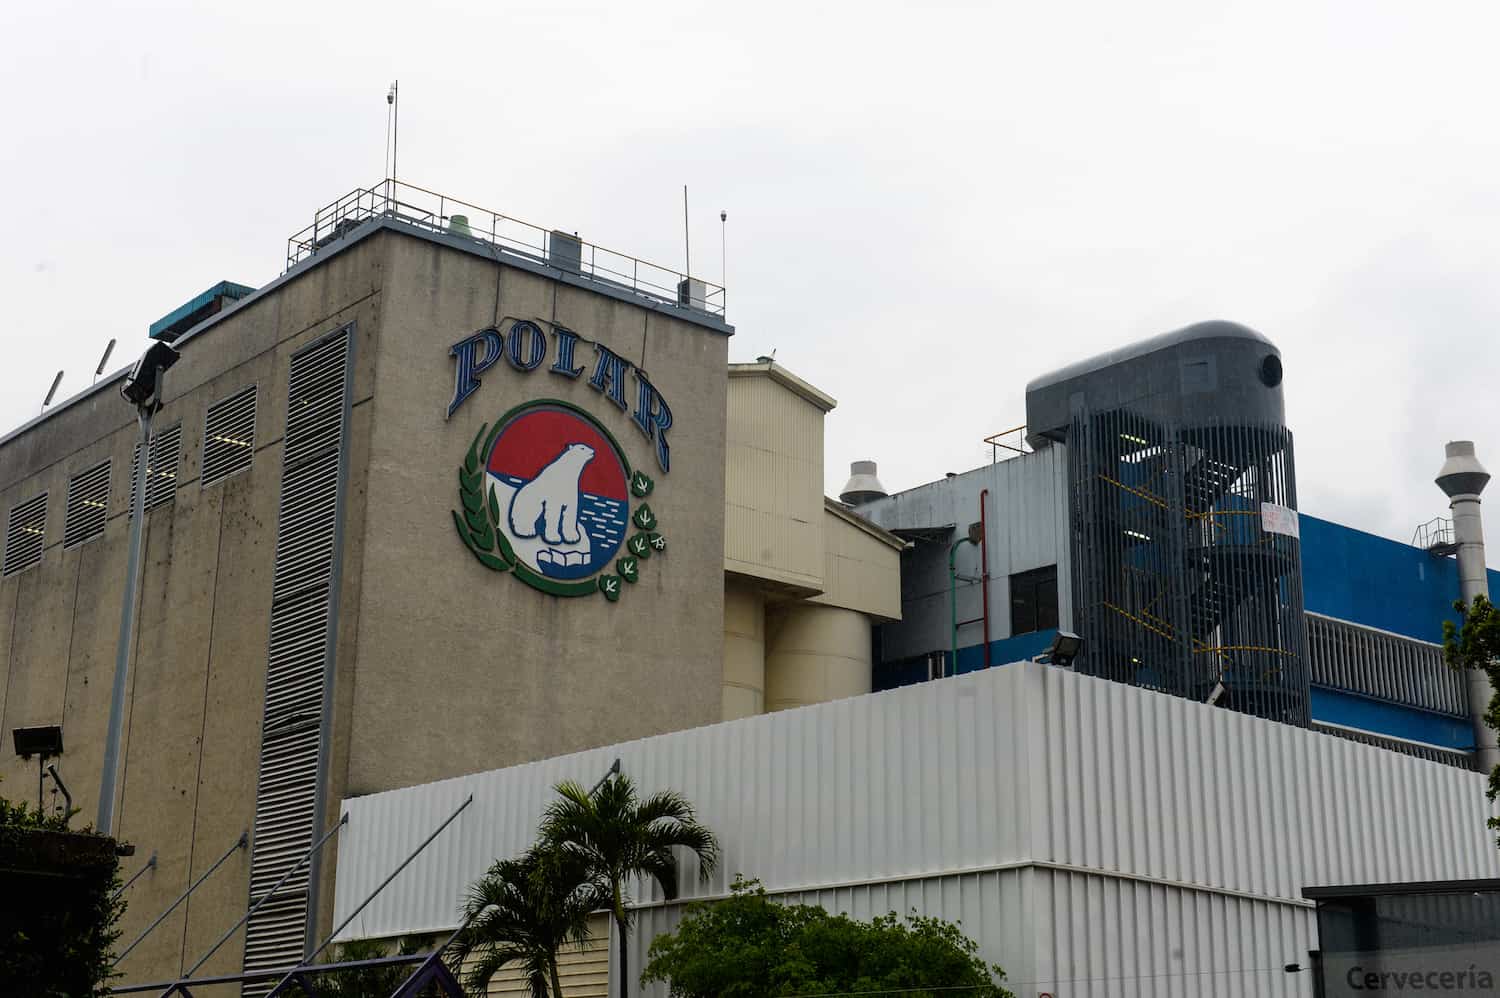 Polar brewery in Venezuela